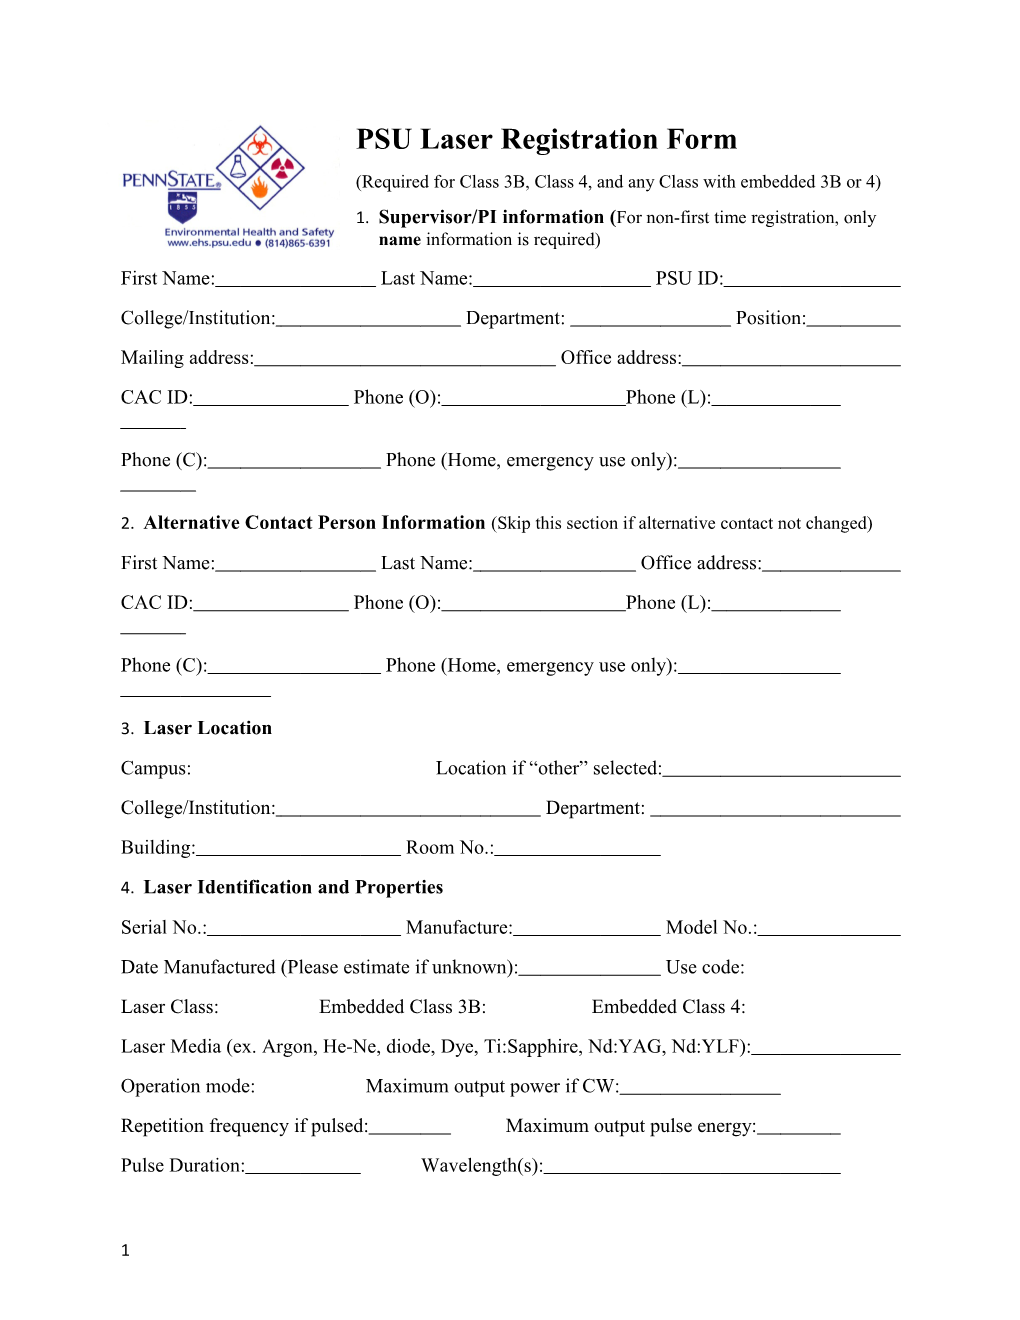 PSU Laser Registration Form